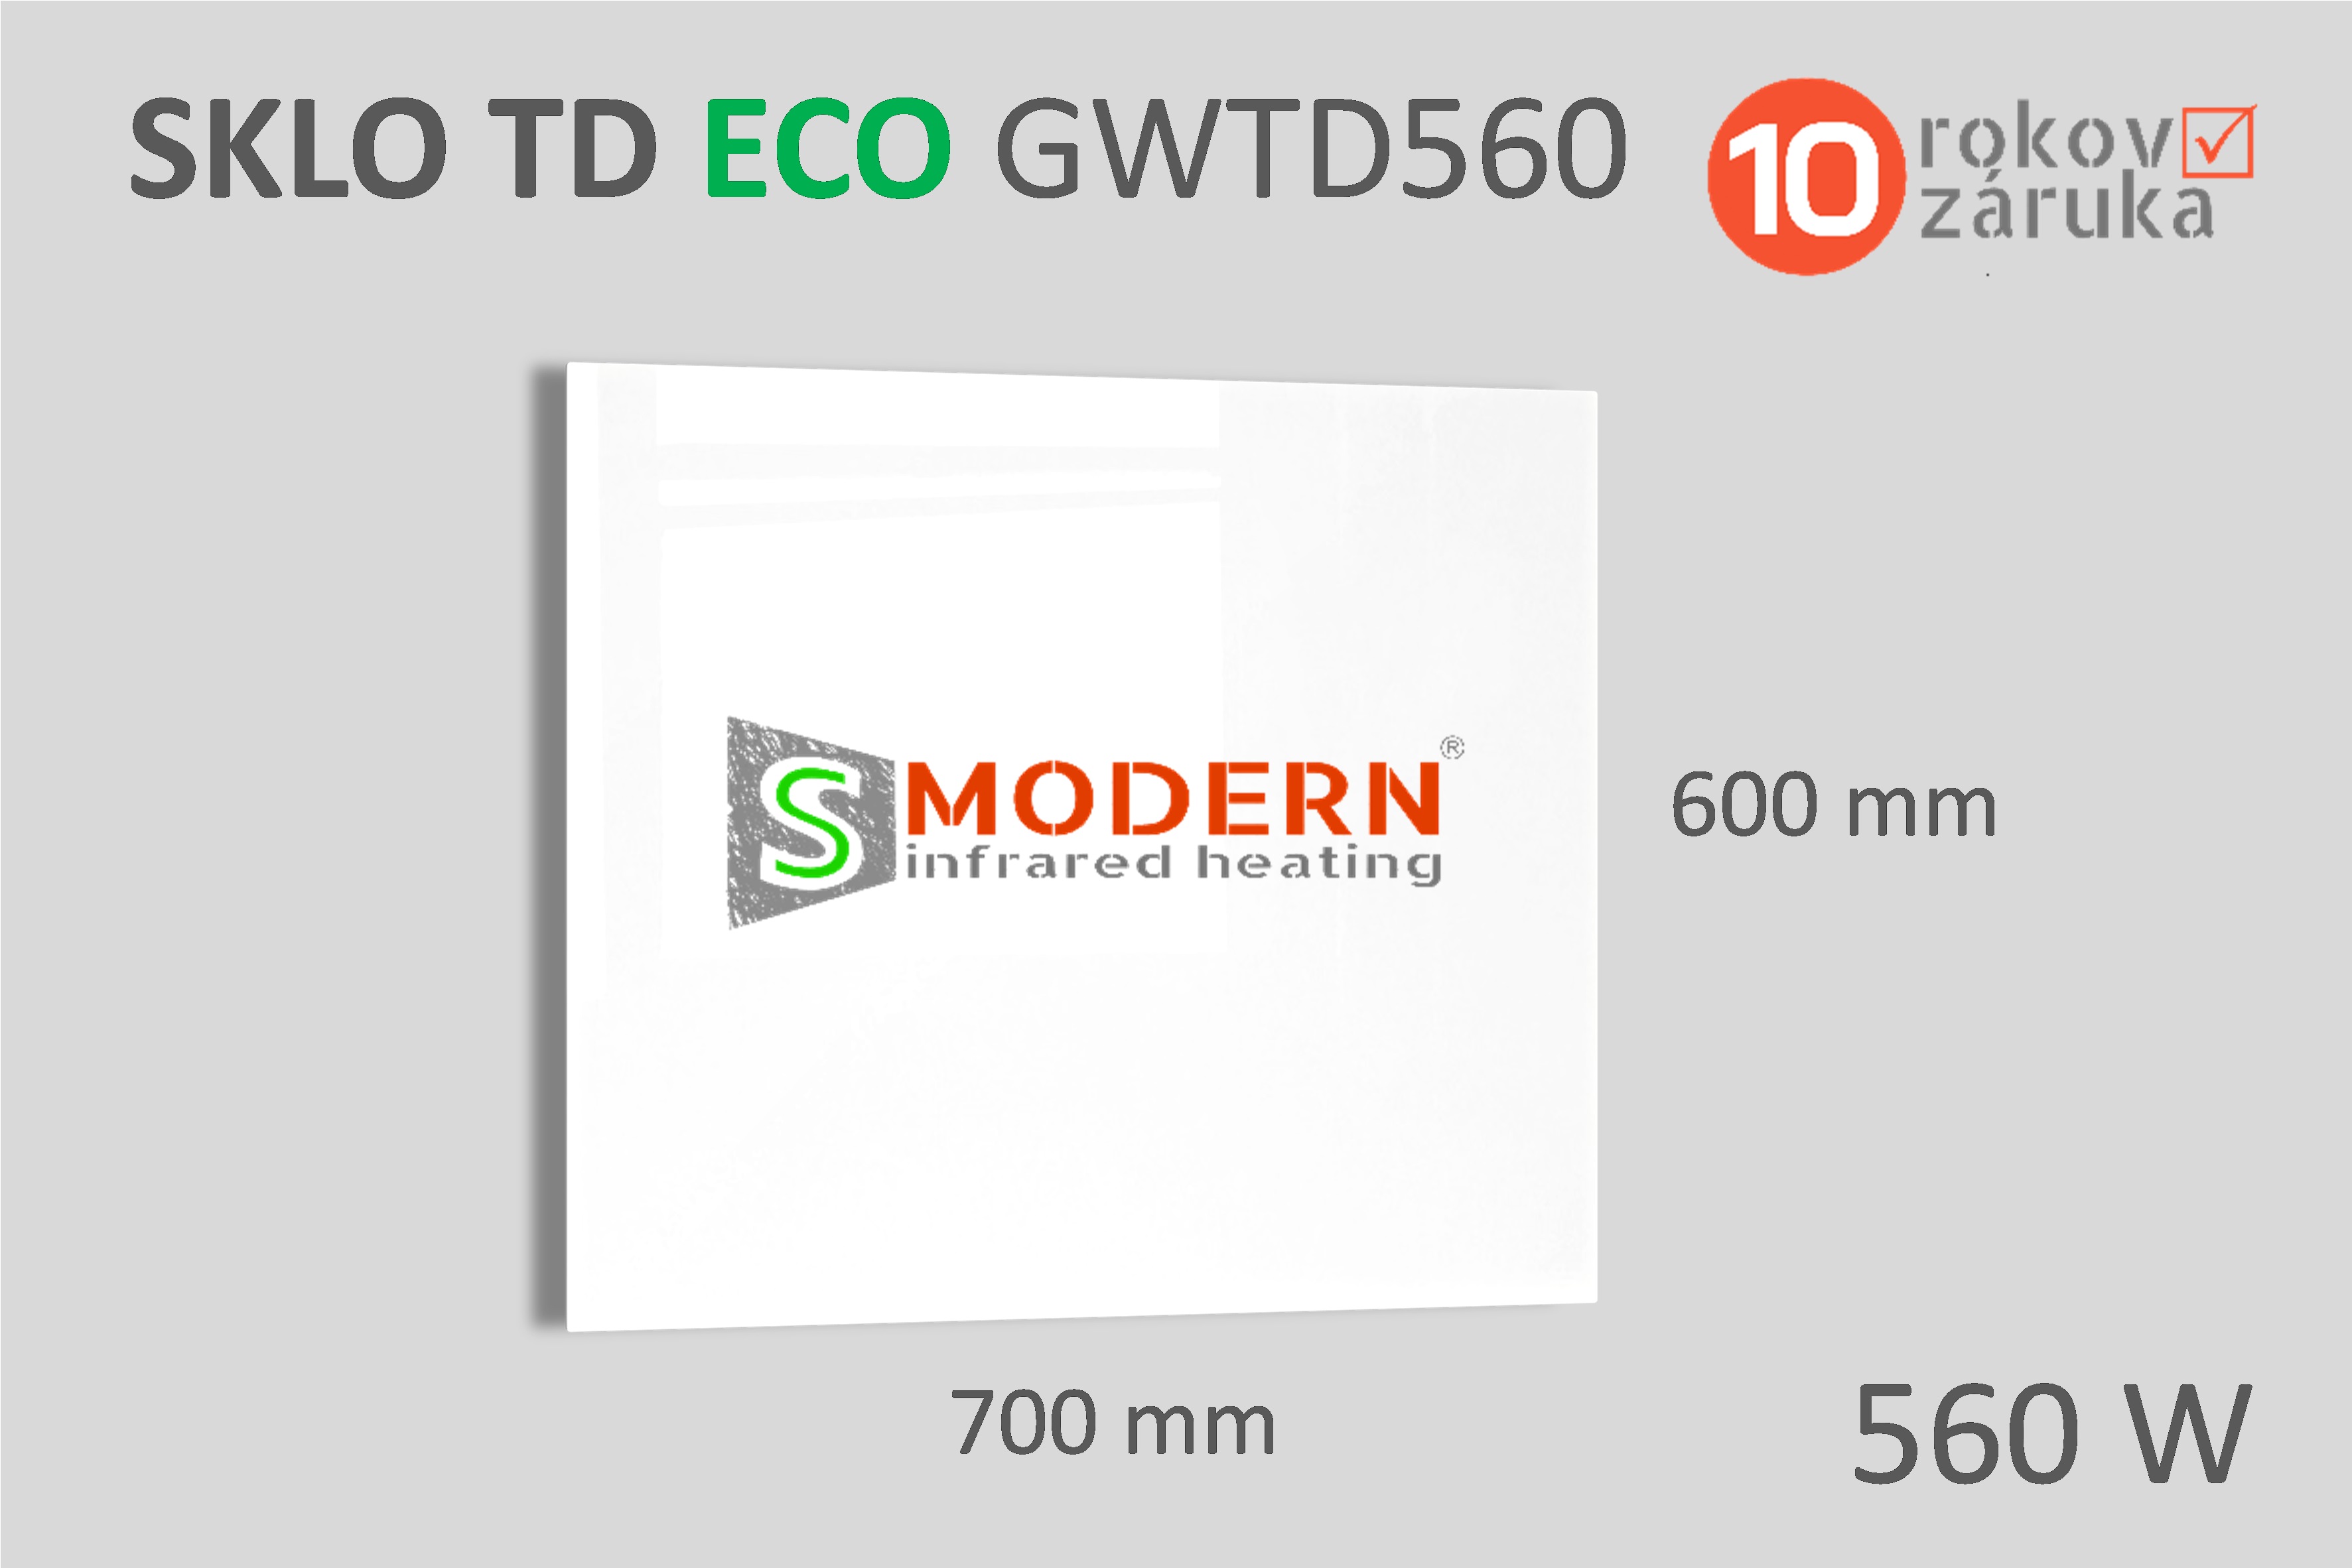 Sklenený infrapanel SMODERN® TD ECO GWTD560 / 560 W, biele sklo